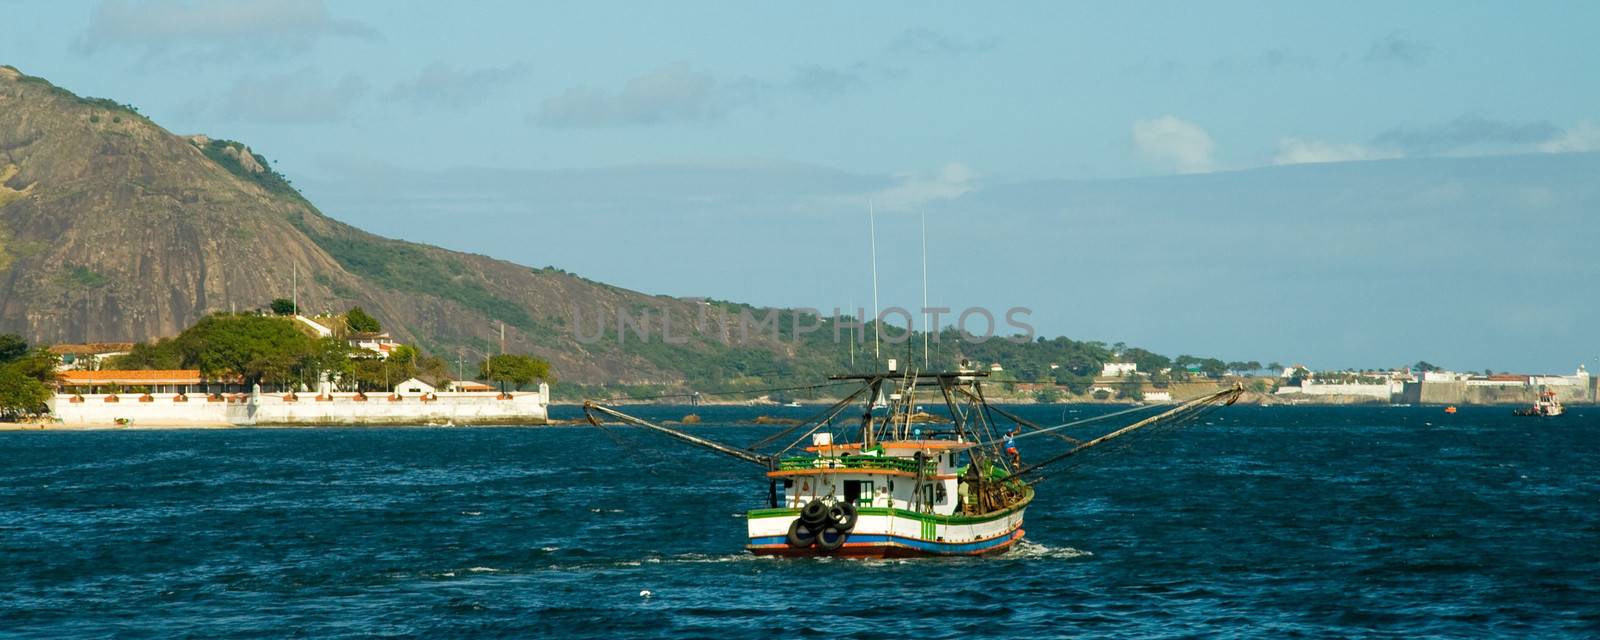 Boat in Guanabara Bay by CelsoDiniz